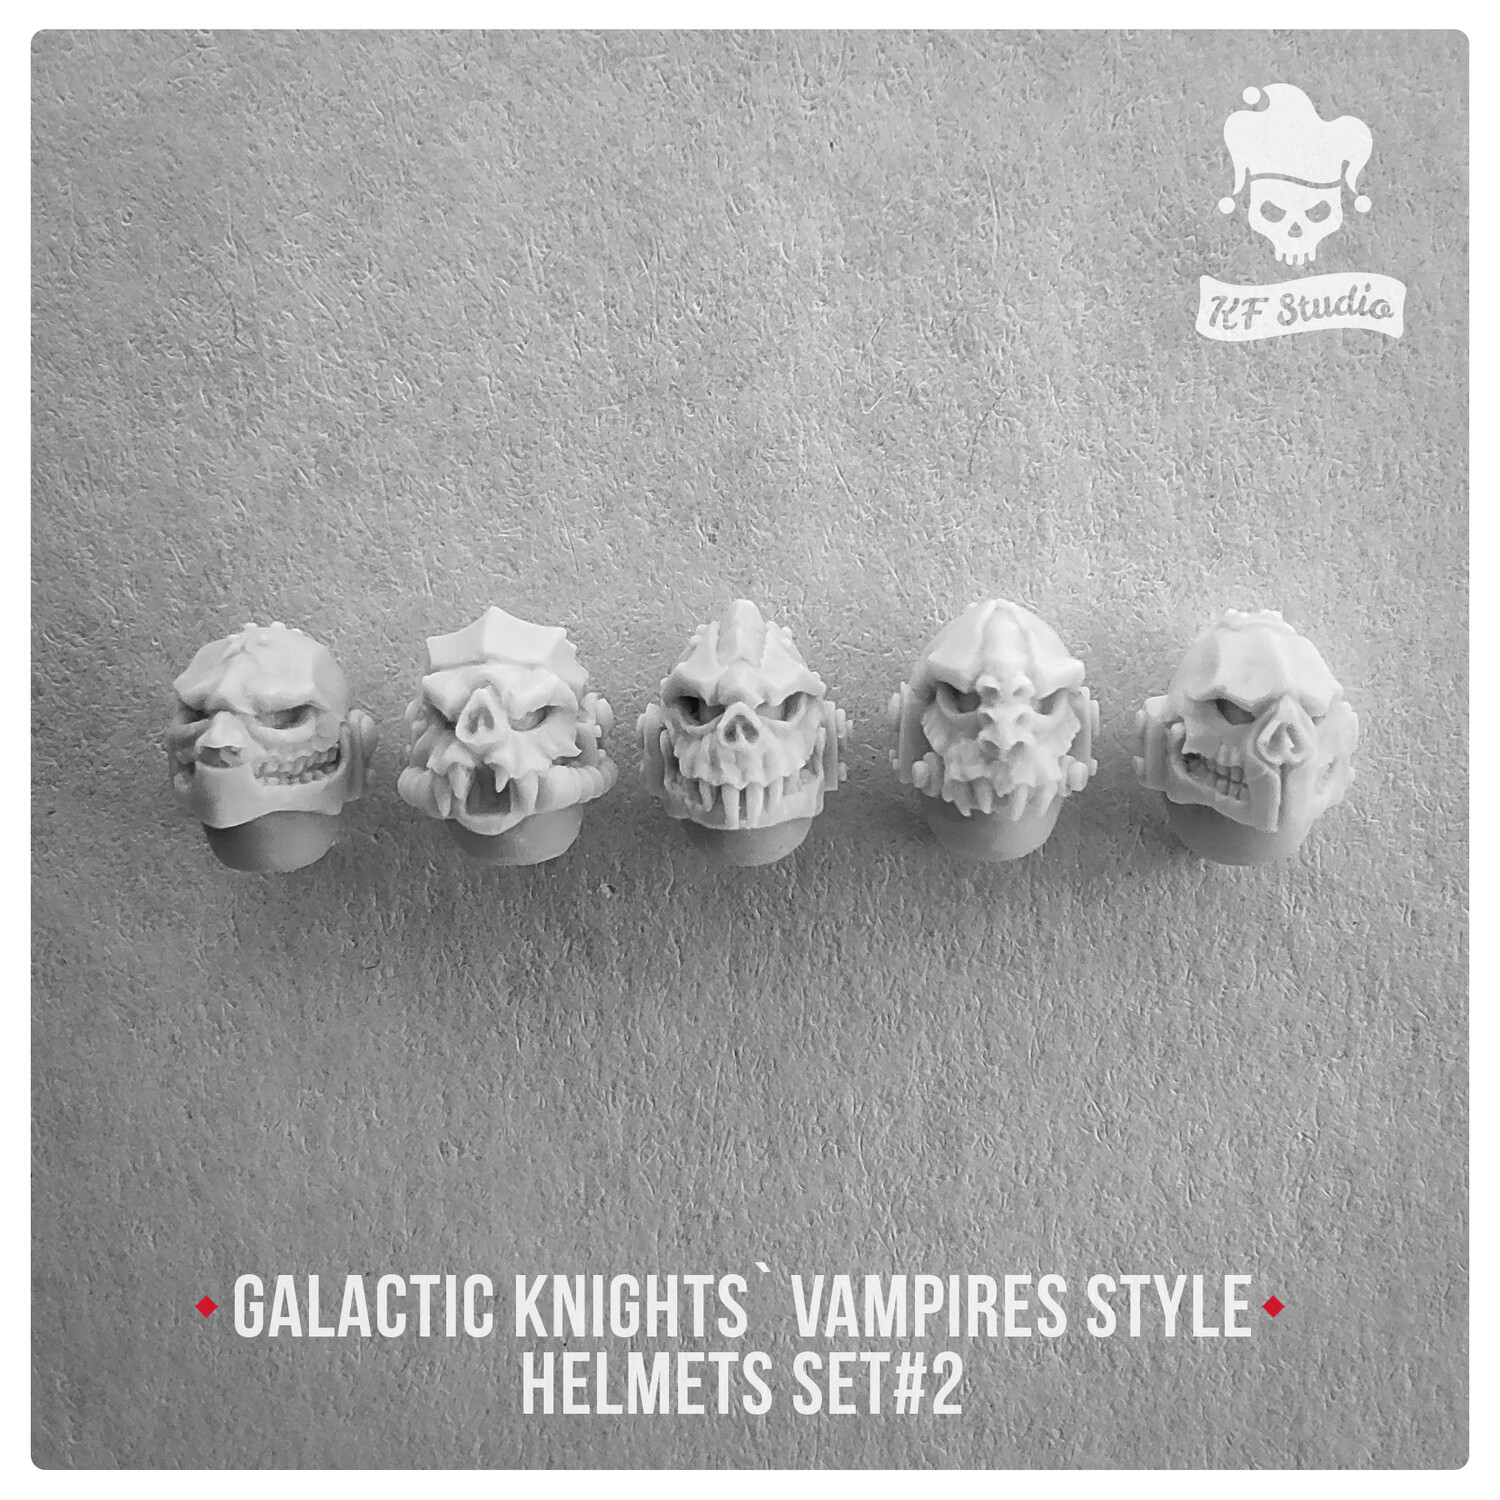 Galactic Knights Vampire Style Helmets Set#2 by KFStudio